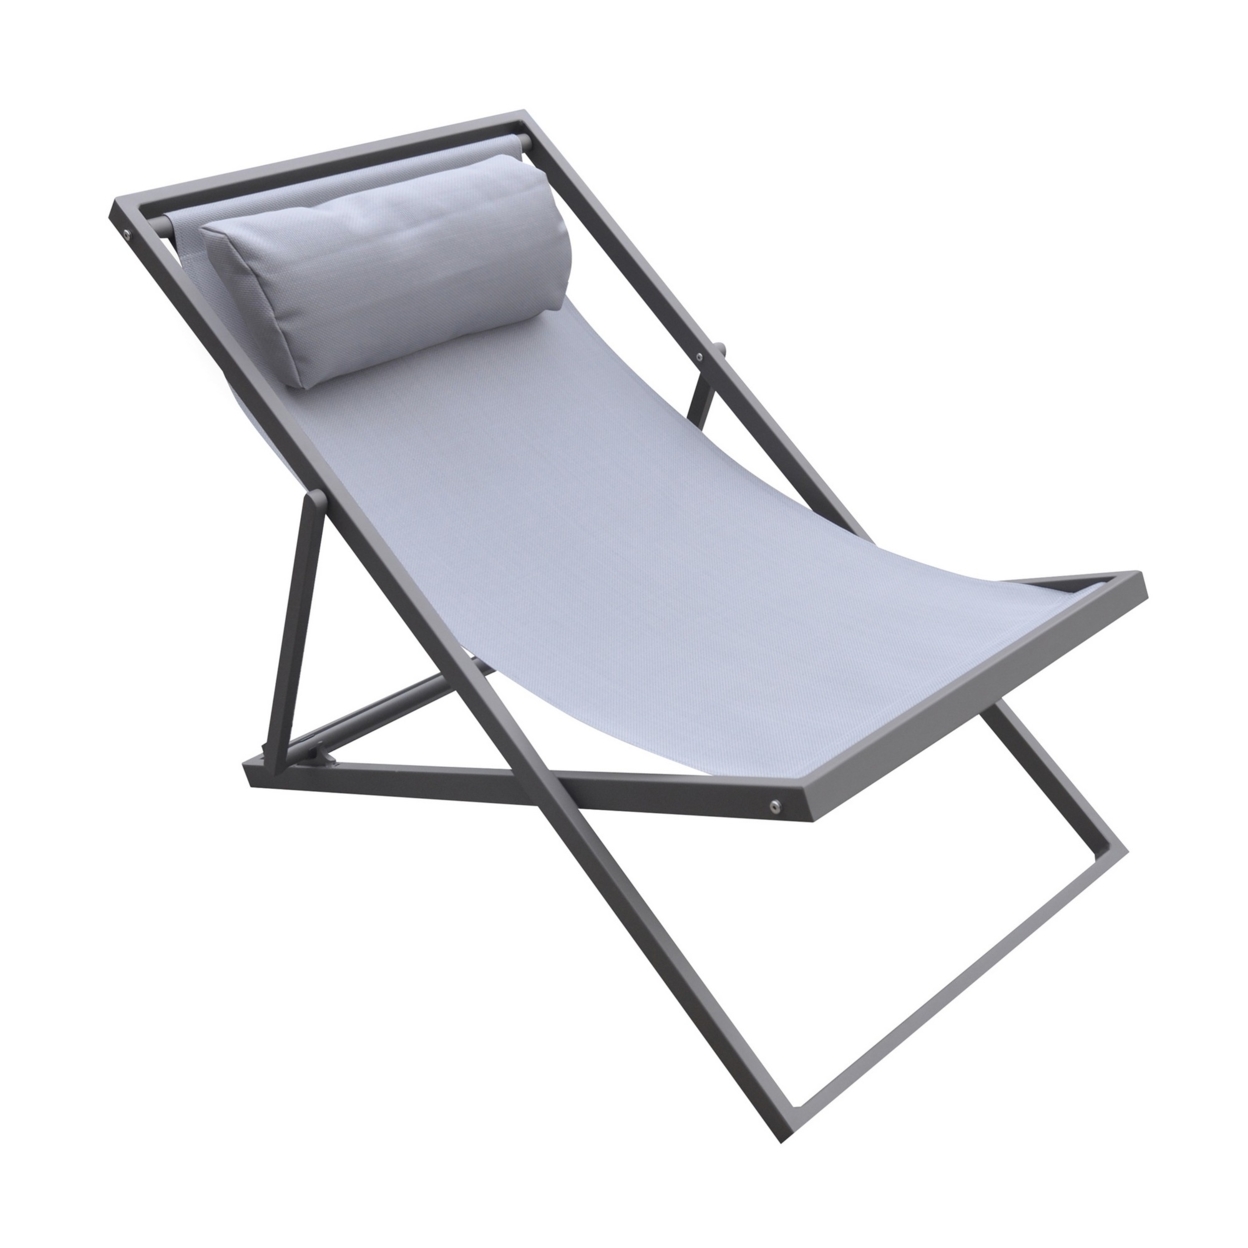 Textilene Upholstered Deck Chair With Padded Headrest, Gray- Saltoro Sherpi